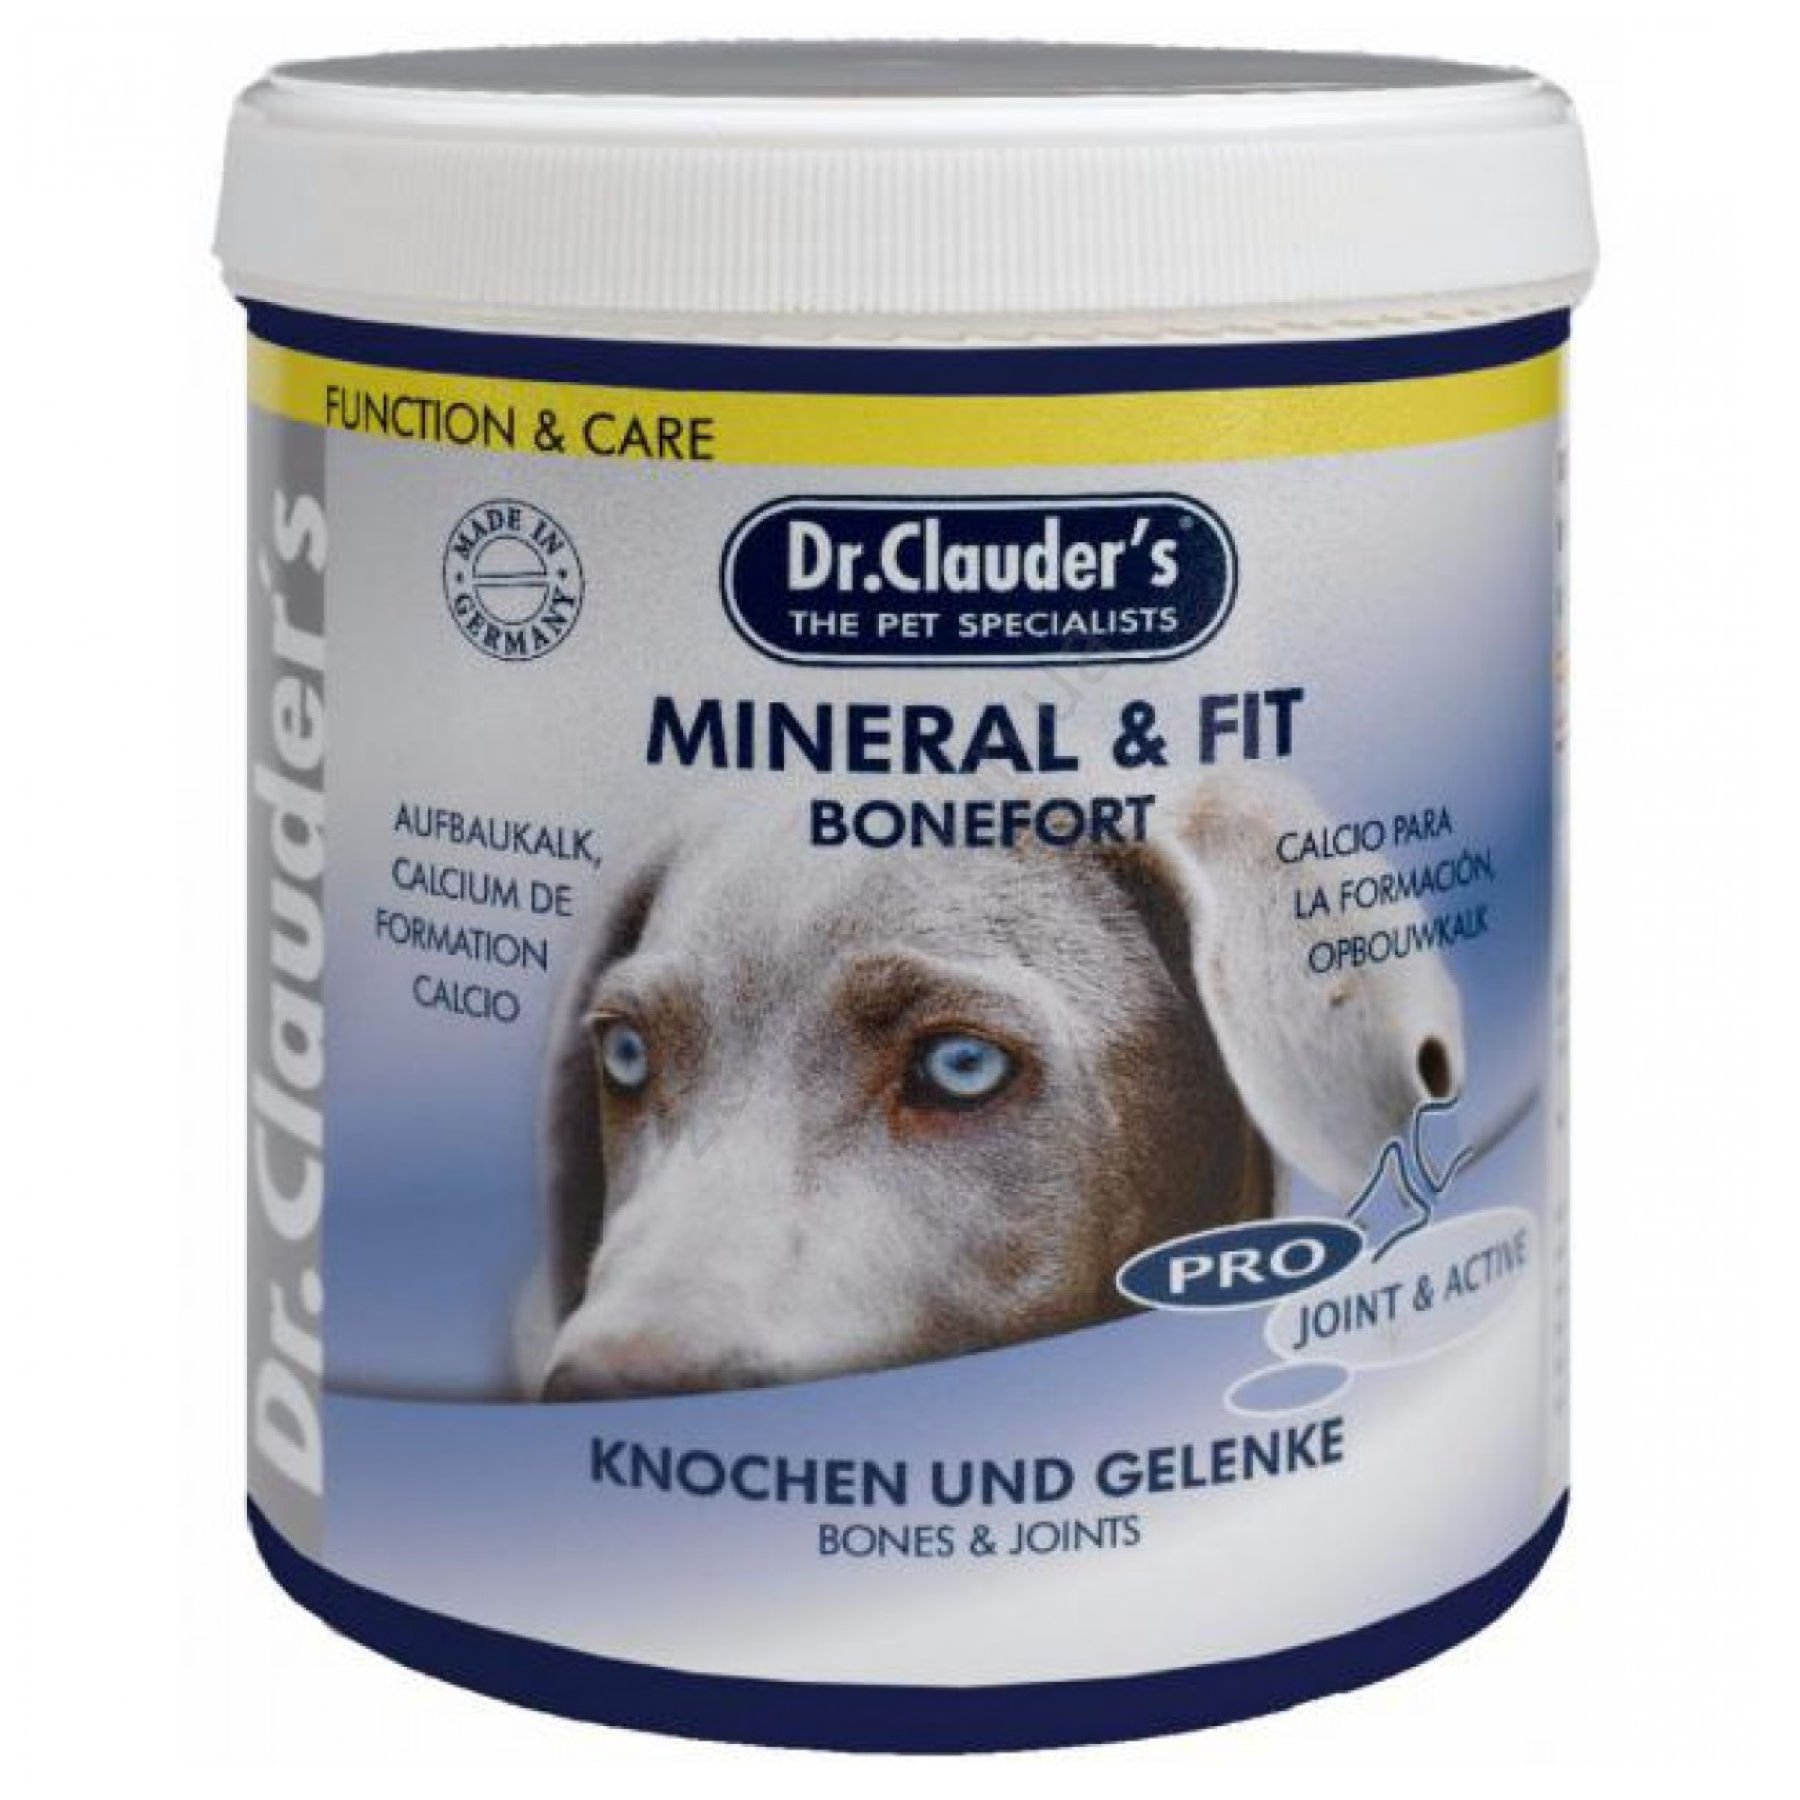 Витаминно-минеральная добавка для собак Dr.Clauder's Mineral & Fit Bonefort в период интенсивного роста, в условиях повышенной нагрузки и стресса на организм, или для пожилых собак, 500 г